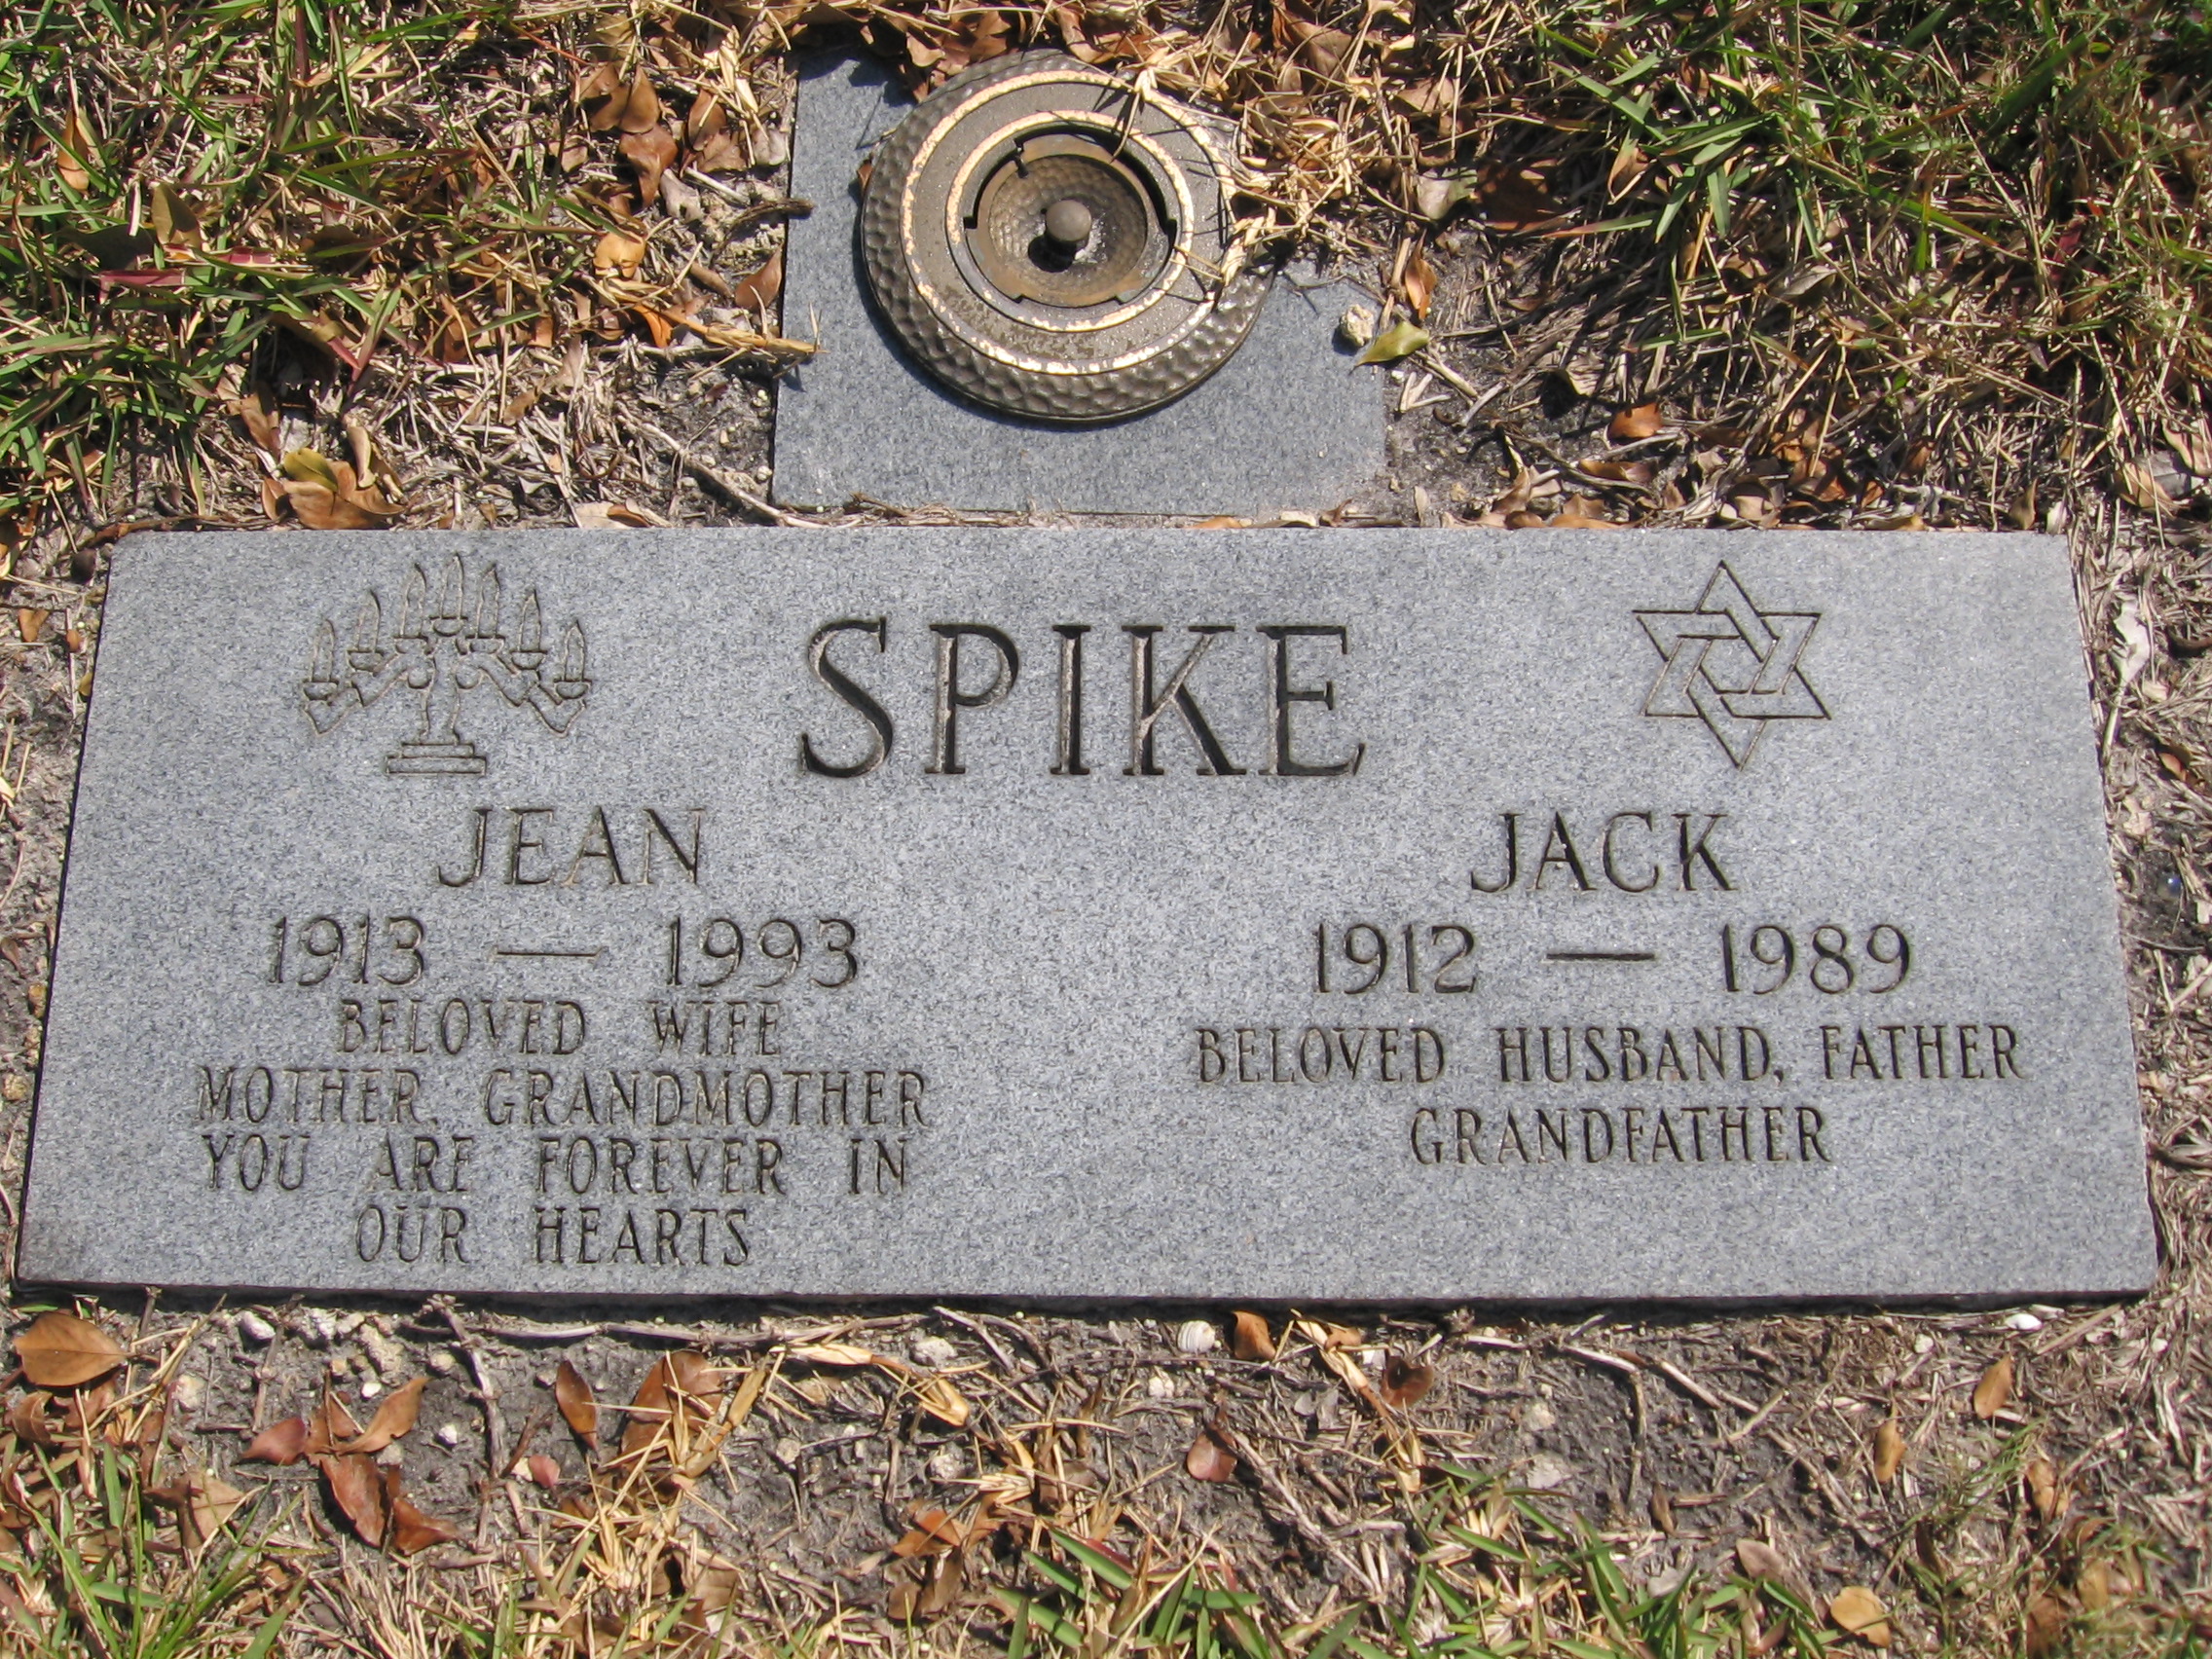 Jack Spike